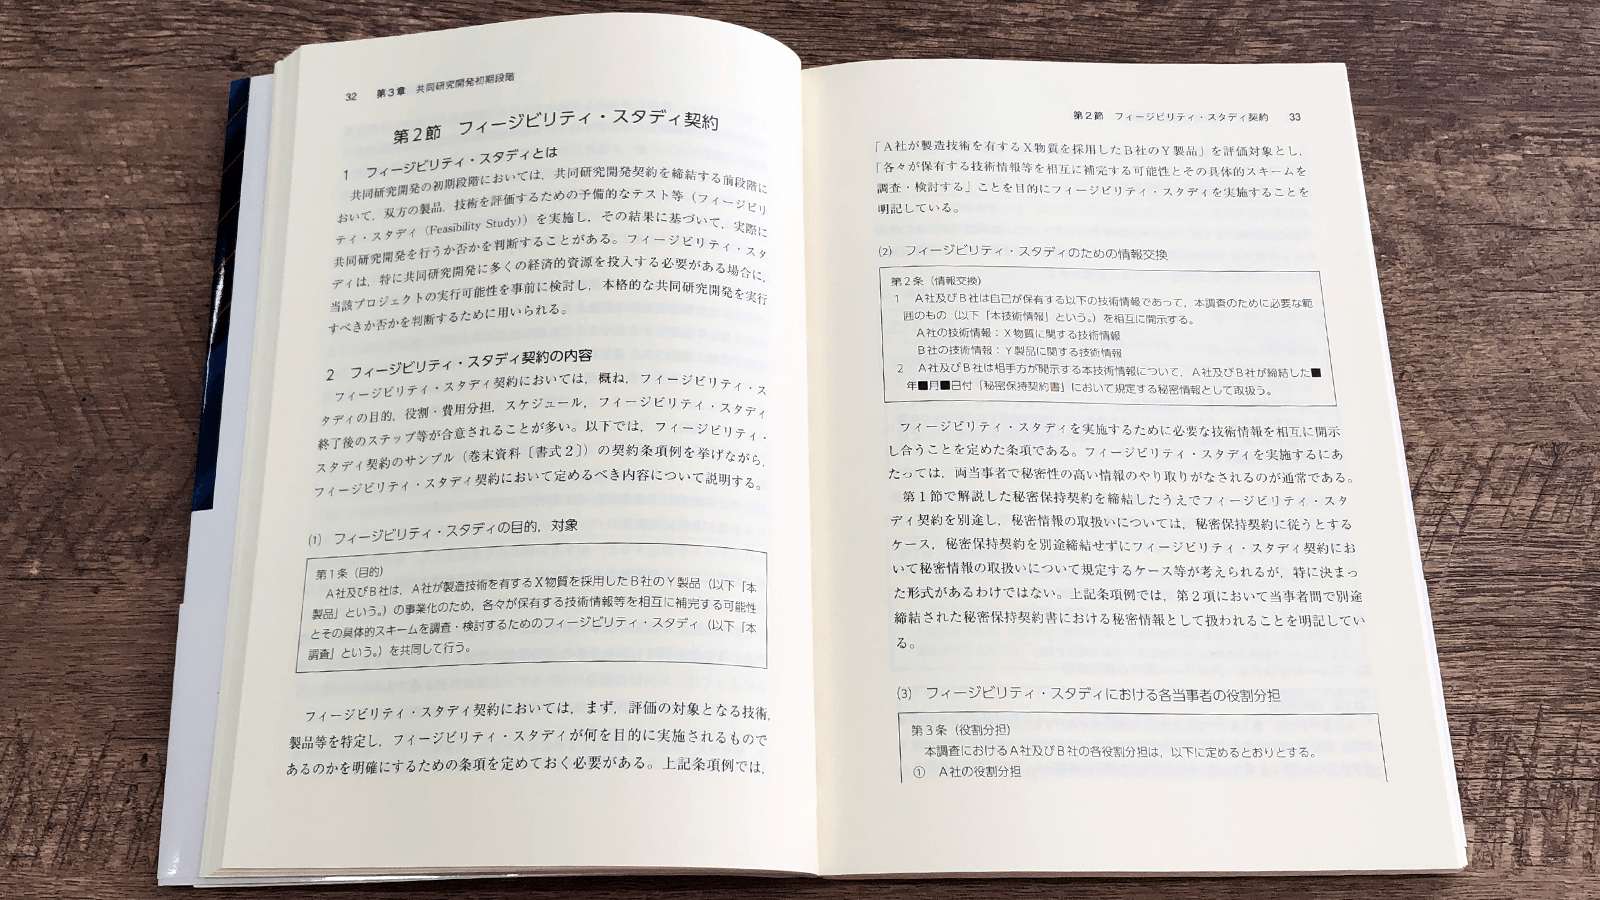 重冨貴光・酒匂景範・古庄俊哉『共同研究開発契約の法務』P32-33